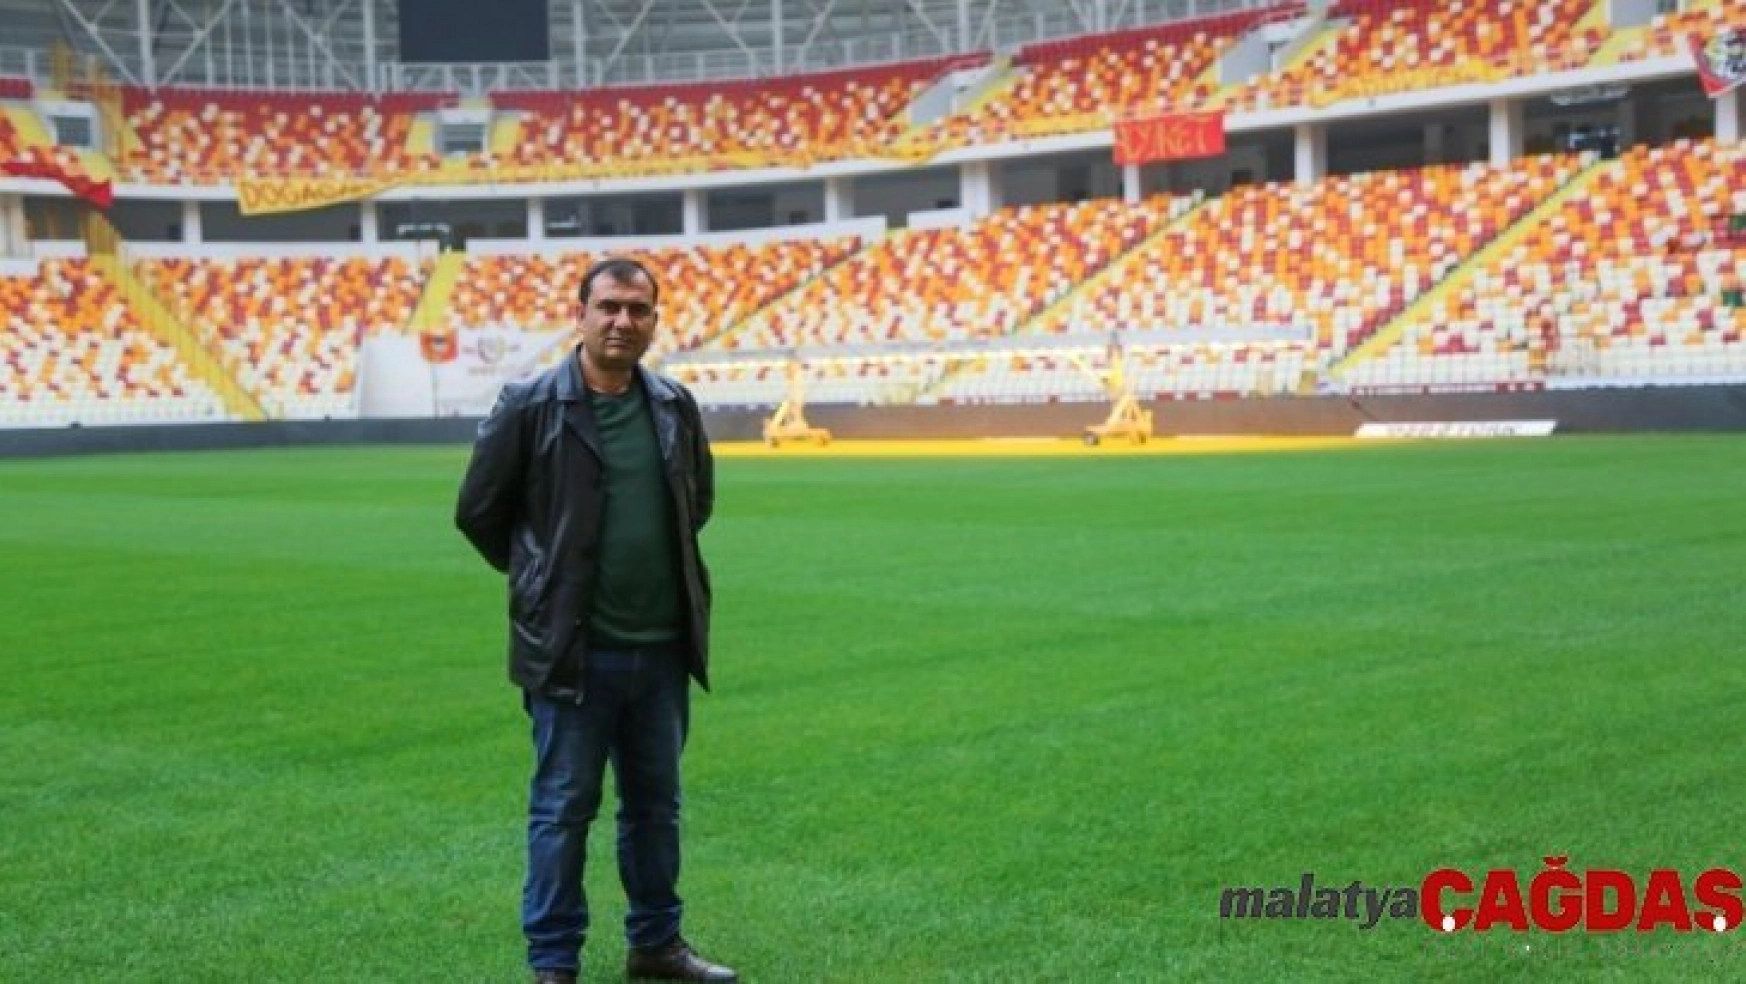 Yeni Malatya Stadyumu'nun zemini yoğun bakımda